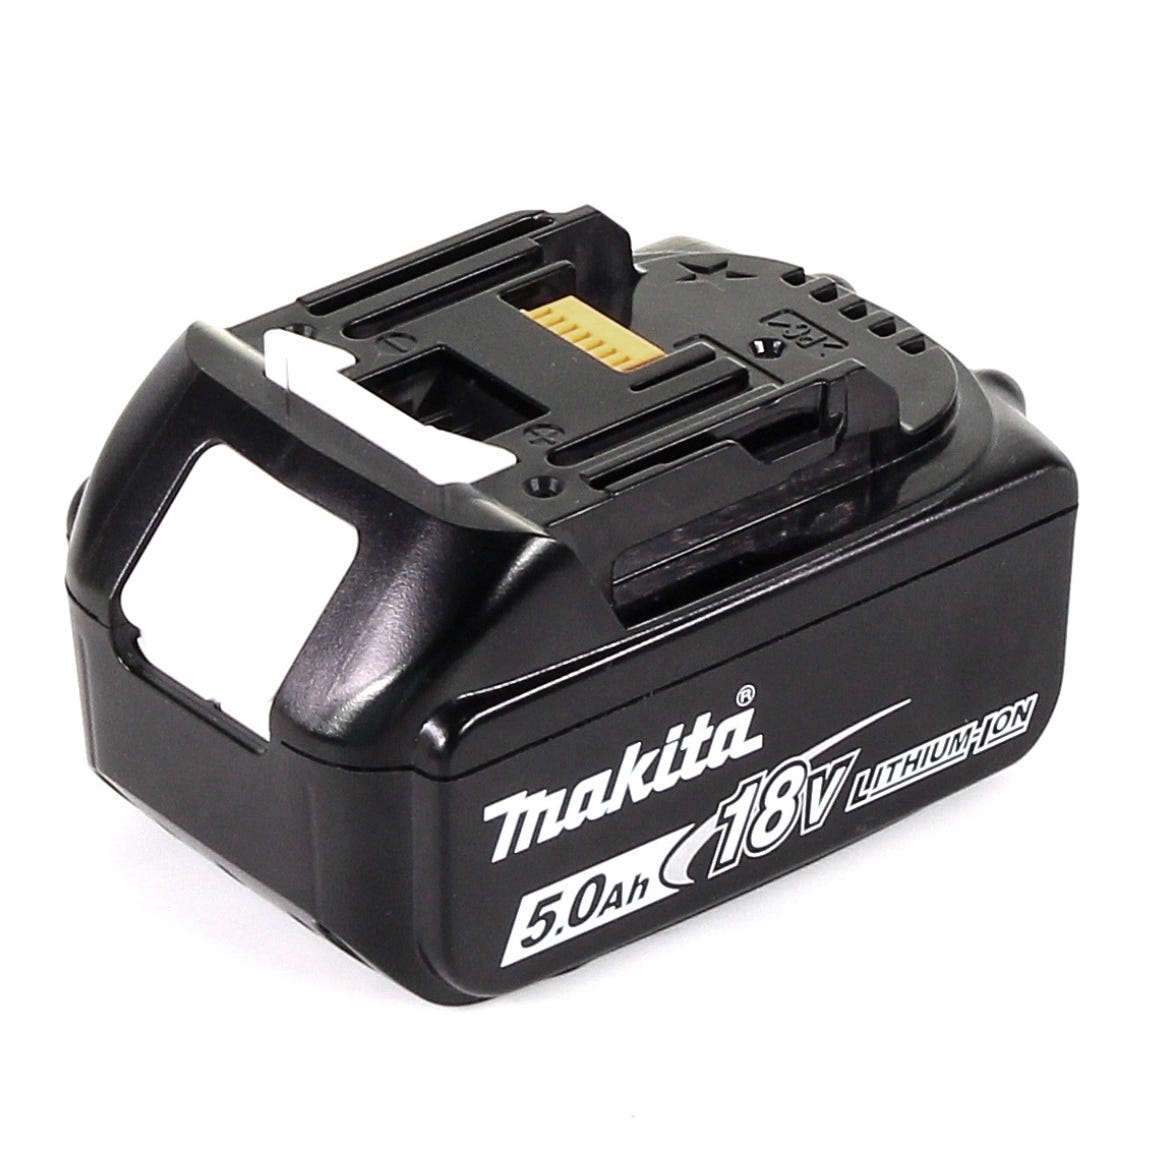 Makita DCS 553 T1J Scie circulaire à main 18V 150 mm Brushless + 1x Batterie 5,0Ah + Coffret Makpac - sans chargeur 3